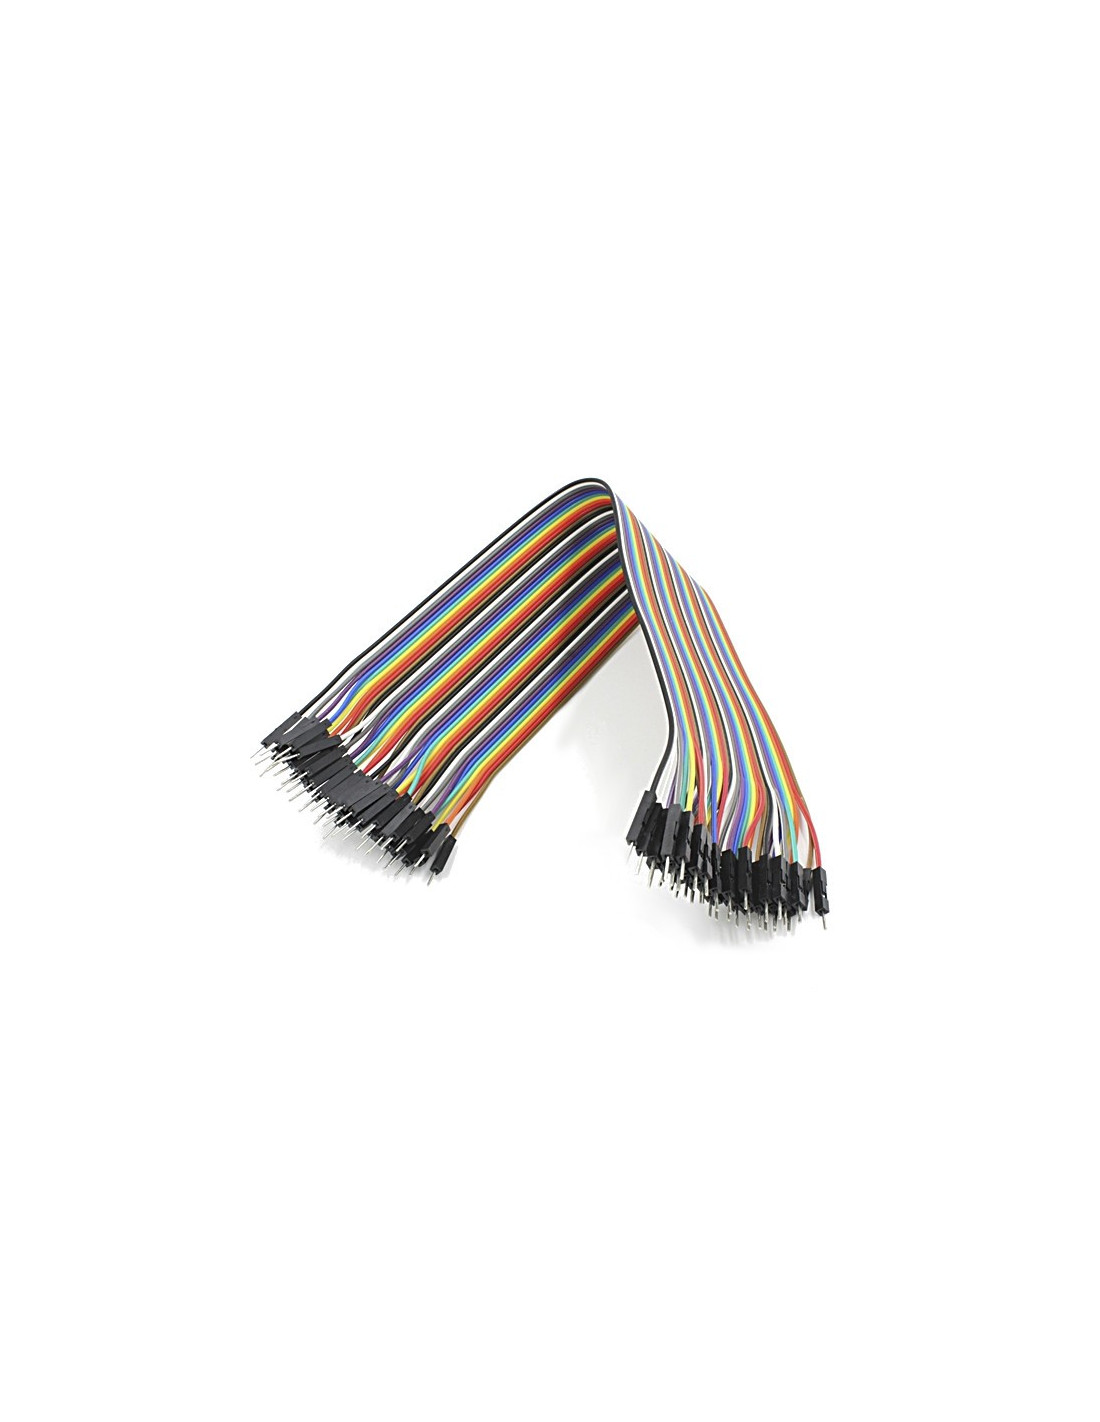 Cables dupont 20cm, M-M (20uds)